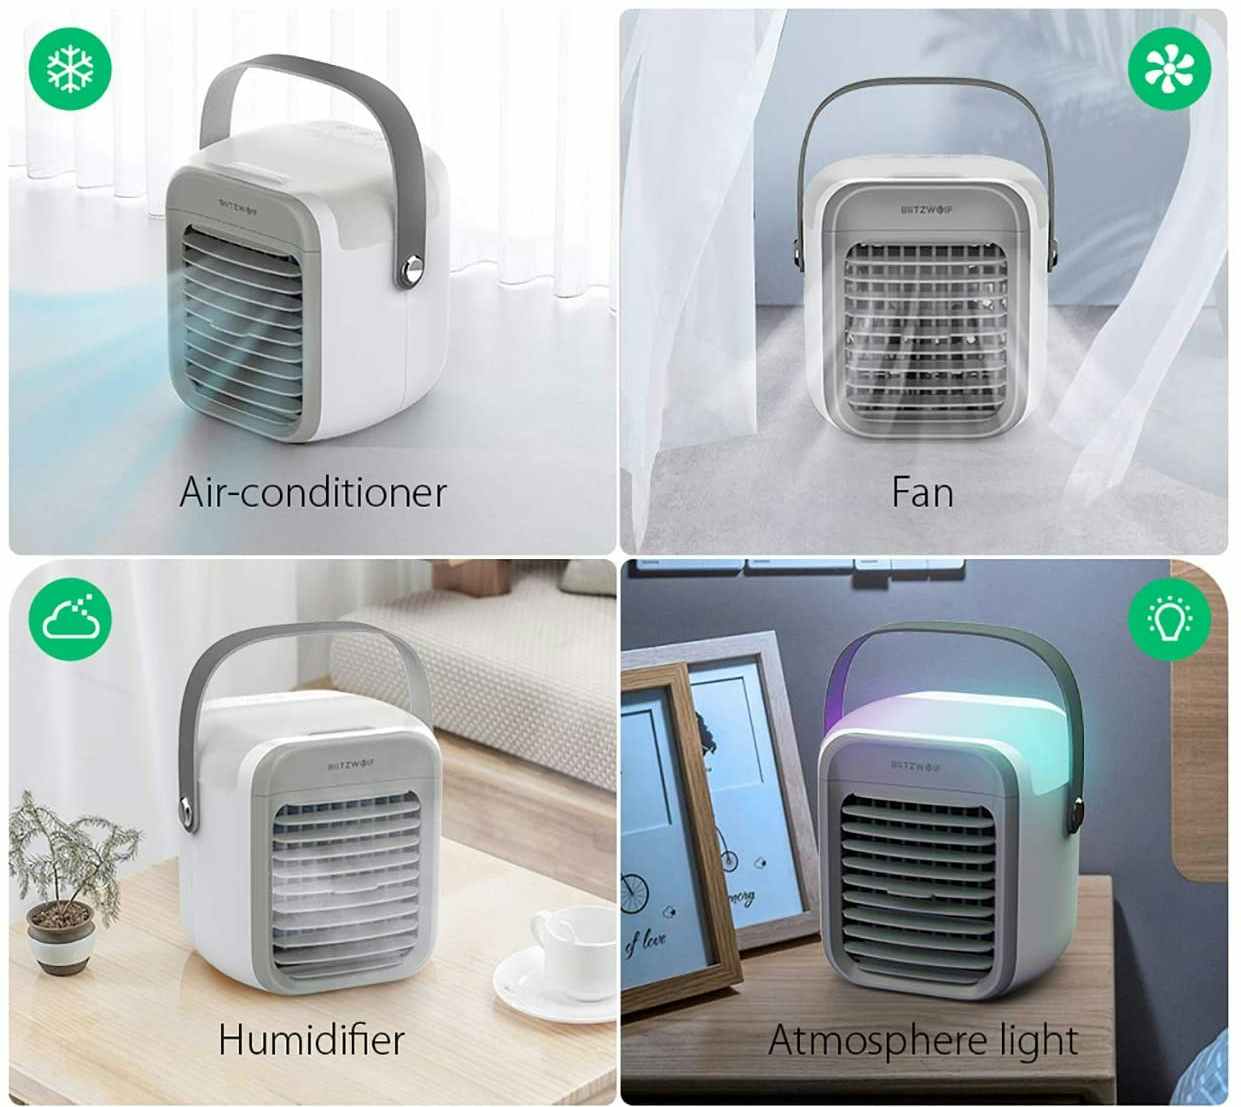 amazon-portable-air-conditioner-072321